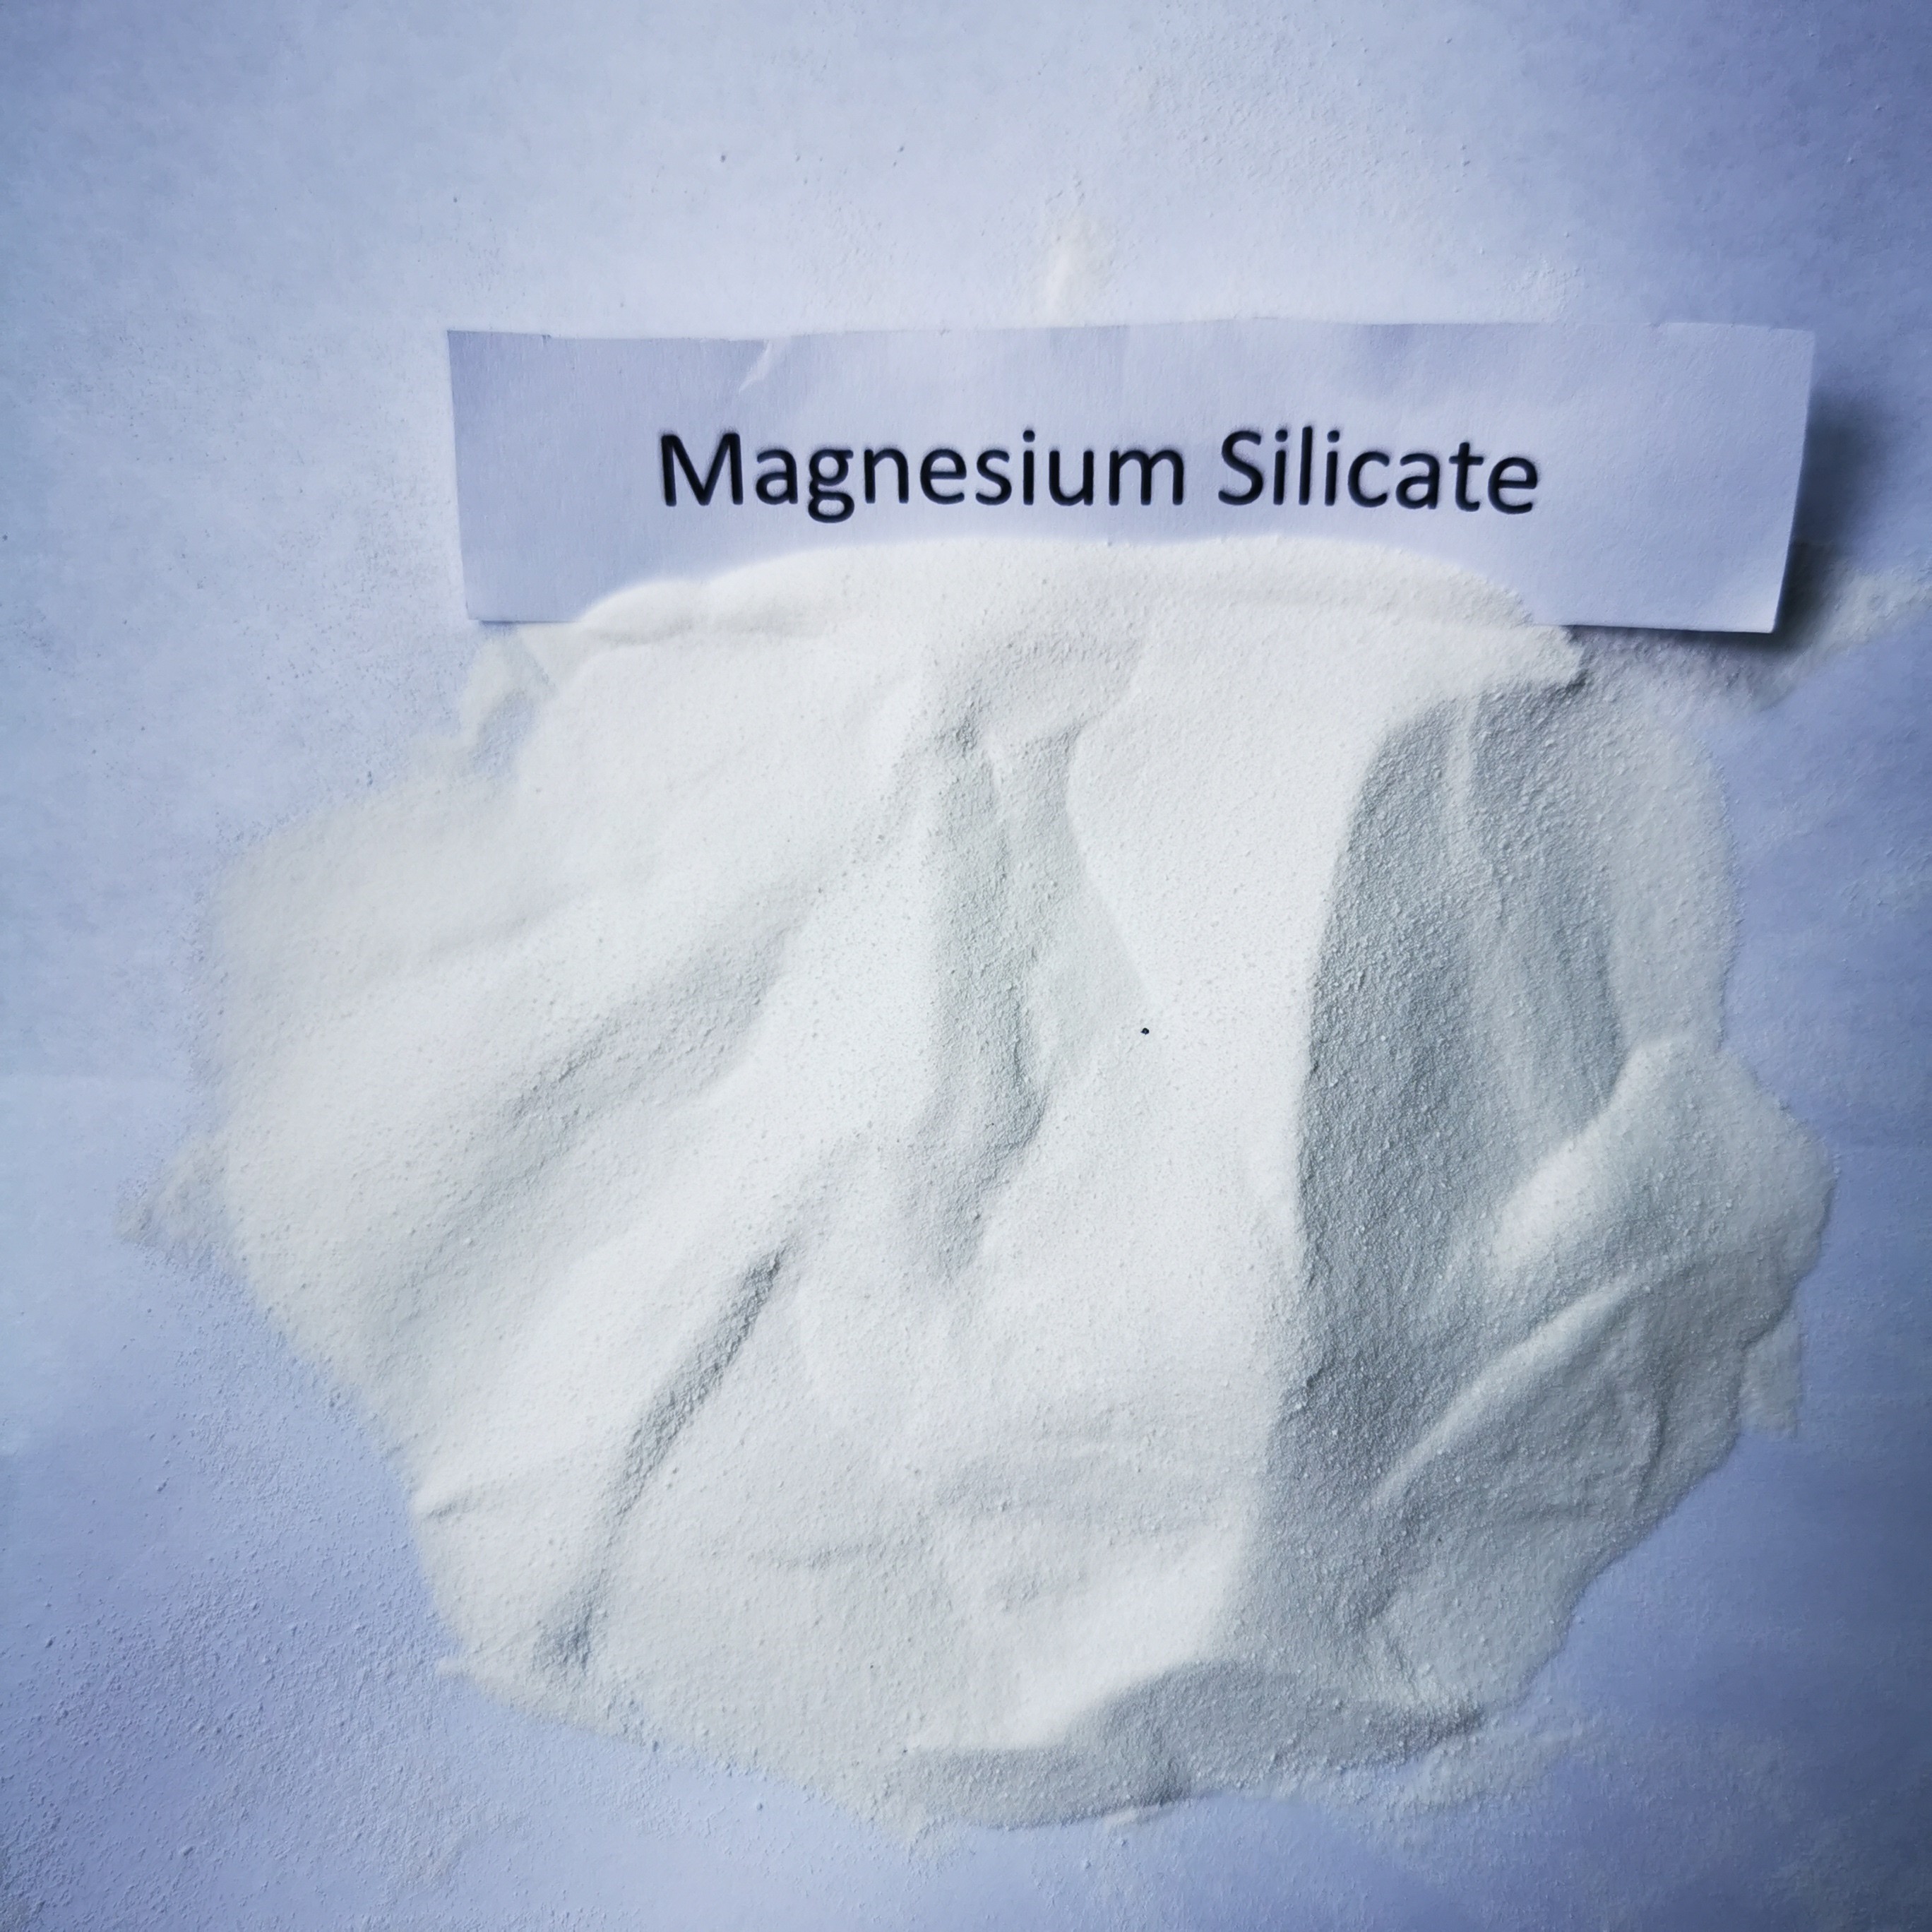 폴리올 산업에서 사용되는 마그네슘 실리케이트 흡수제